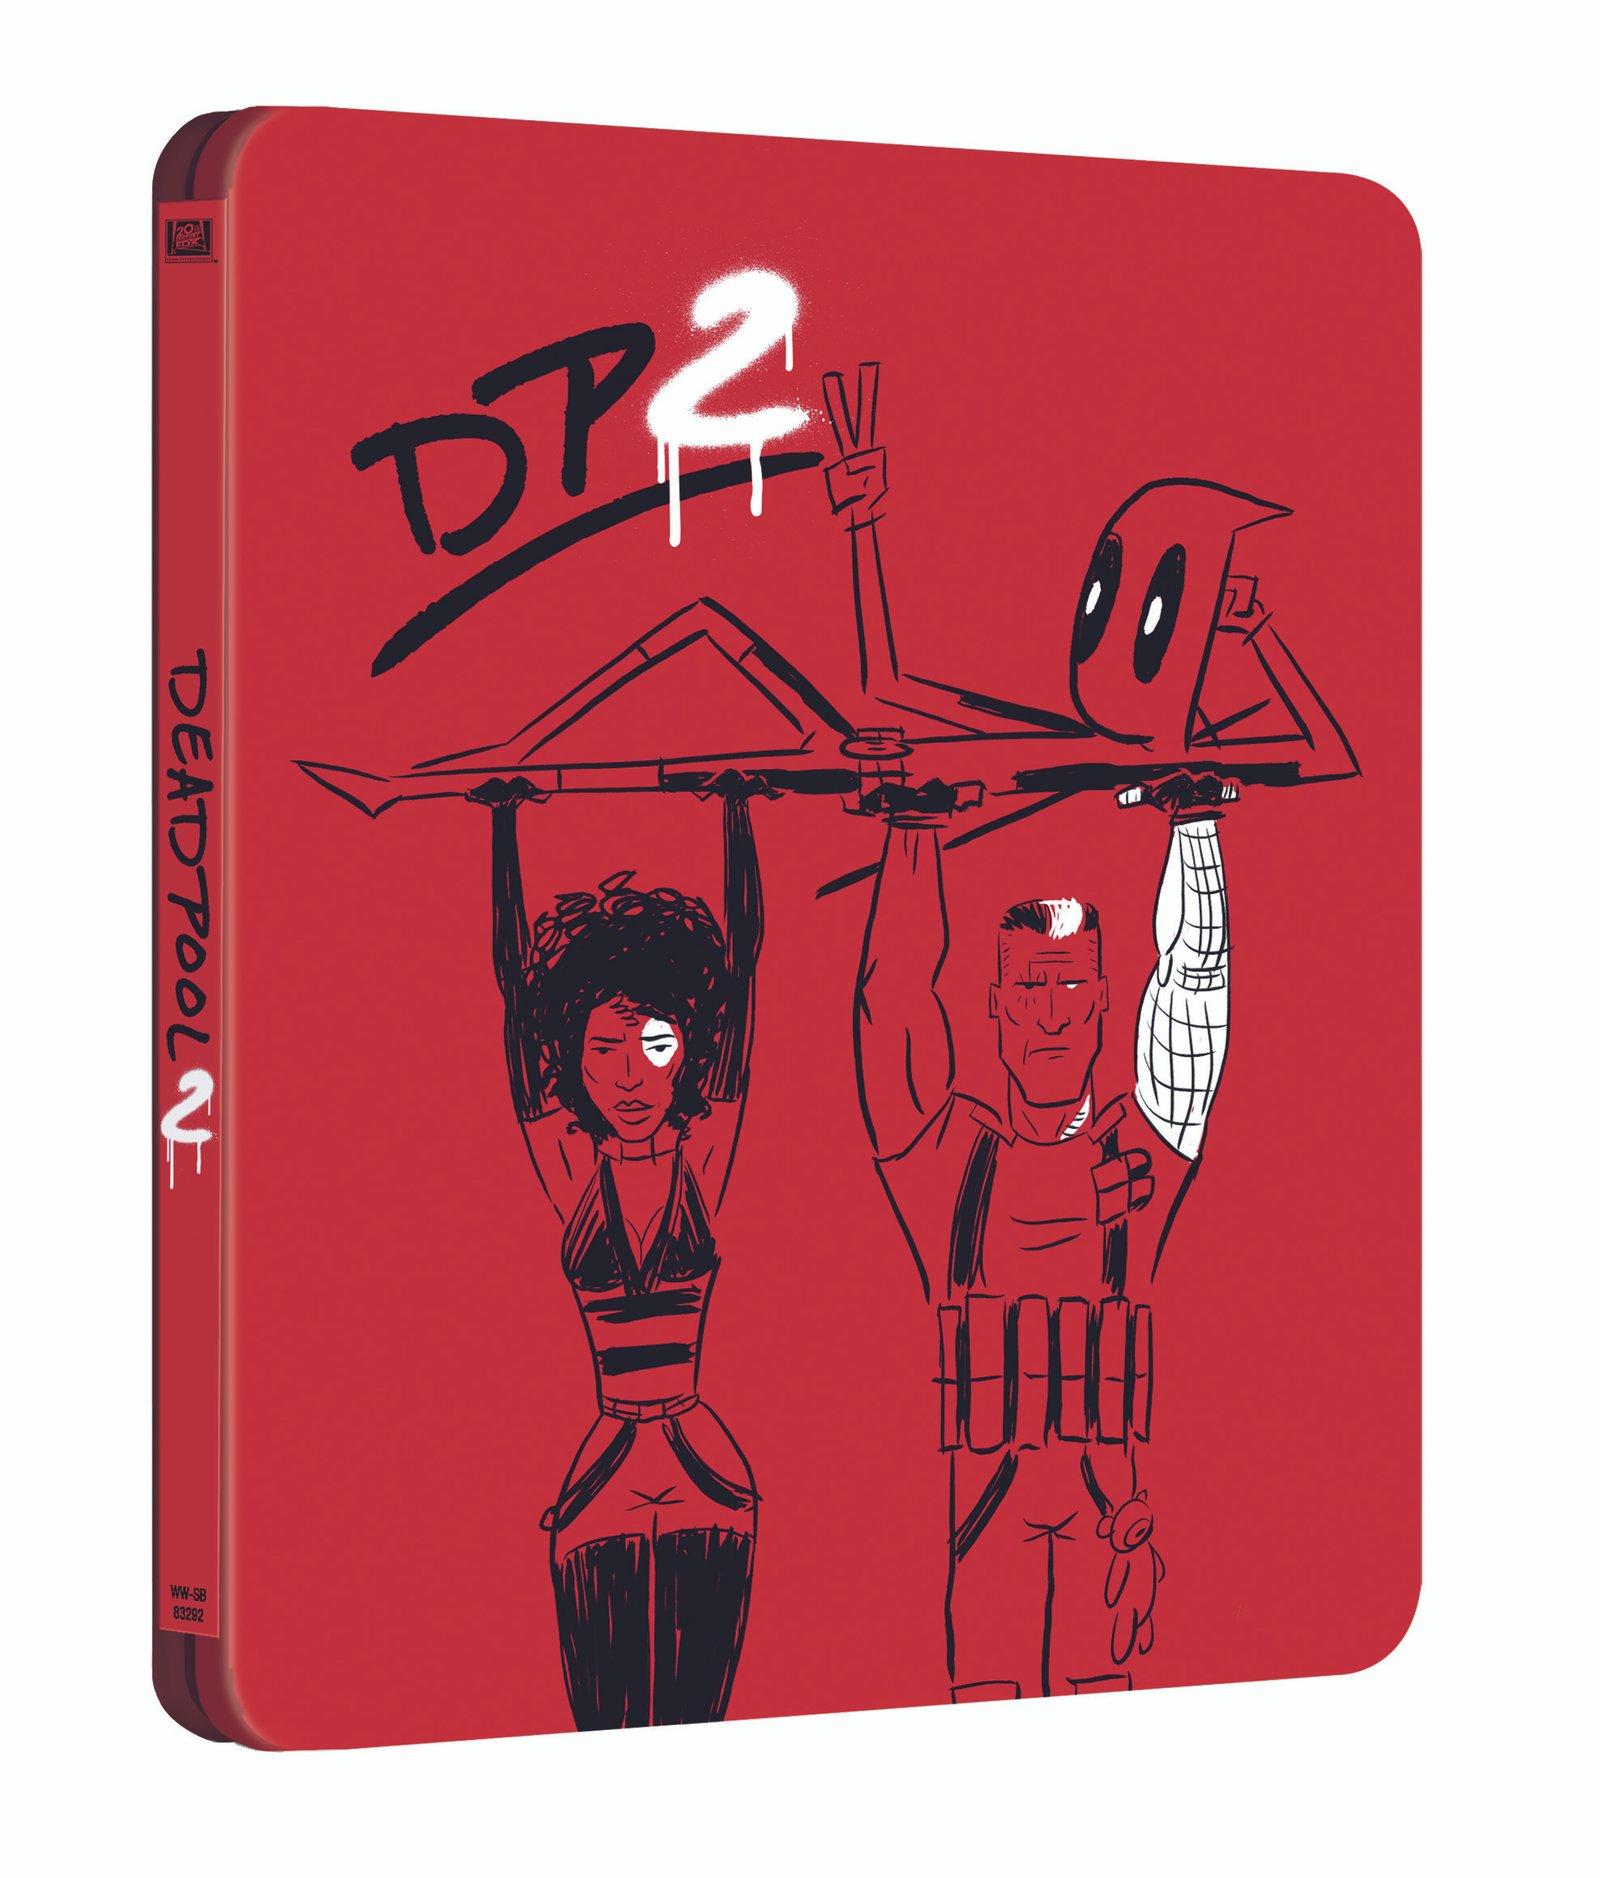 'Deadpool 2' en 4K, Blu-ray, Steelbook y Dvd con la versión SUPER $@%!#& • En tu pantalla